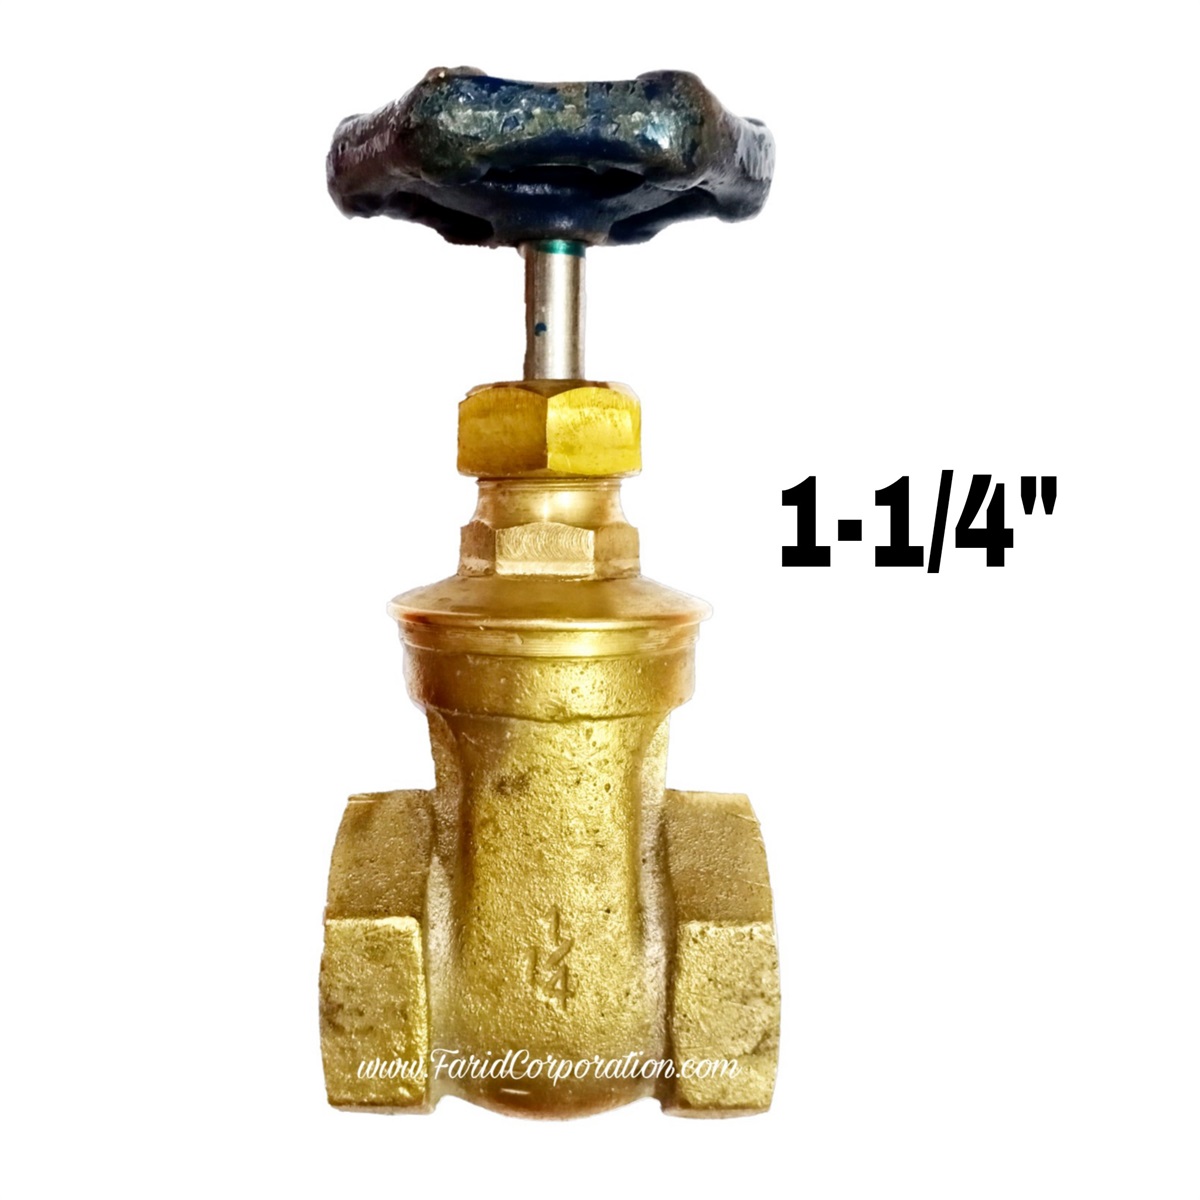 Gate valve 1-1/4" size thread Brass | Anwar gate valve 1-1/4"